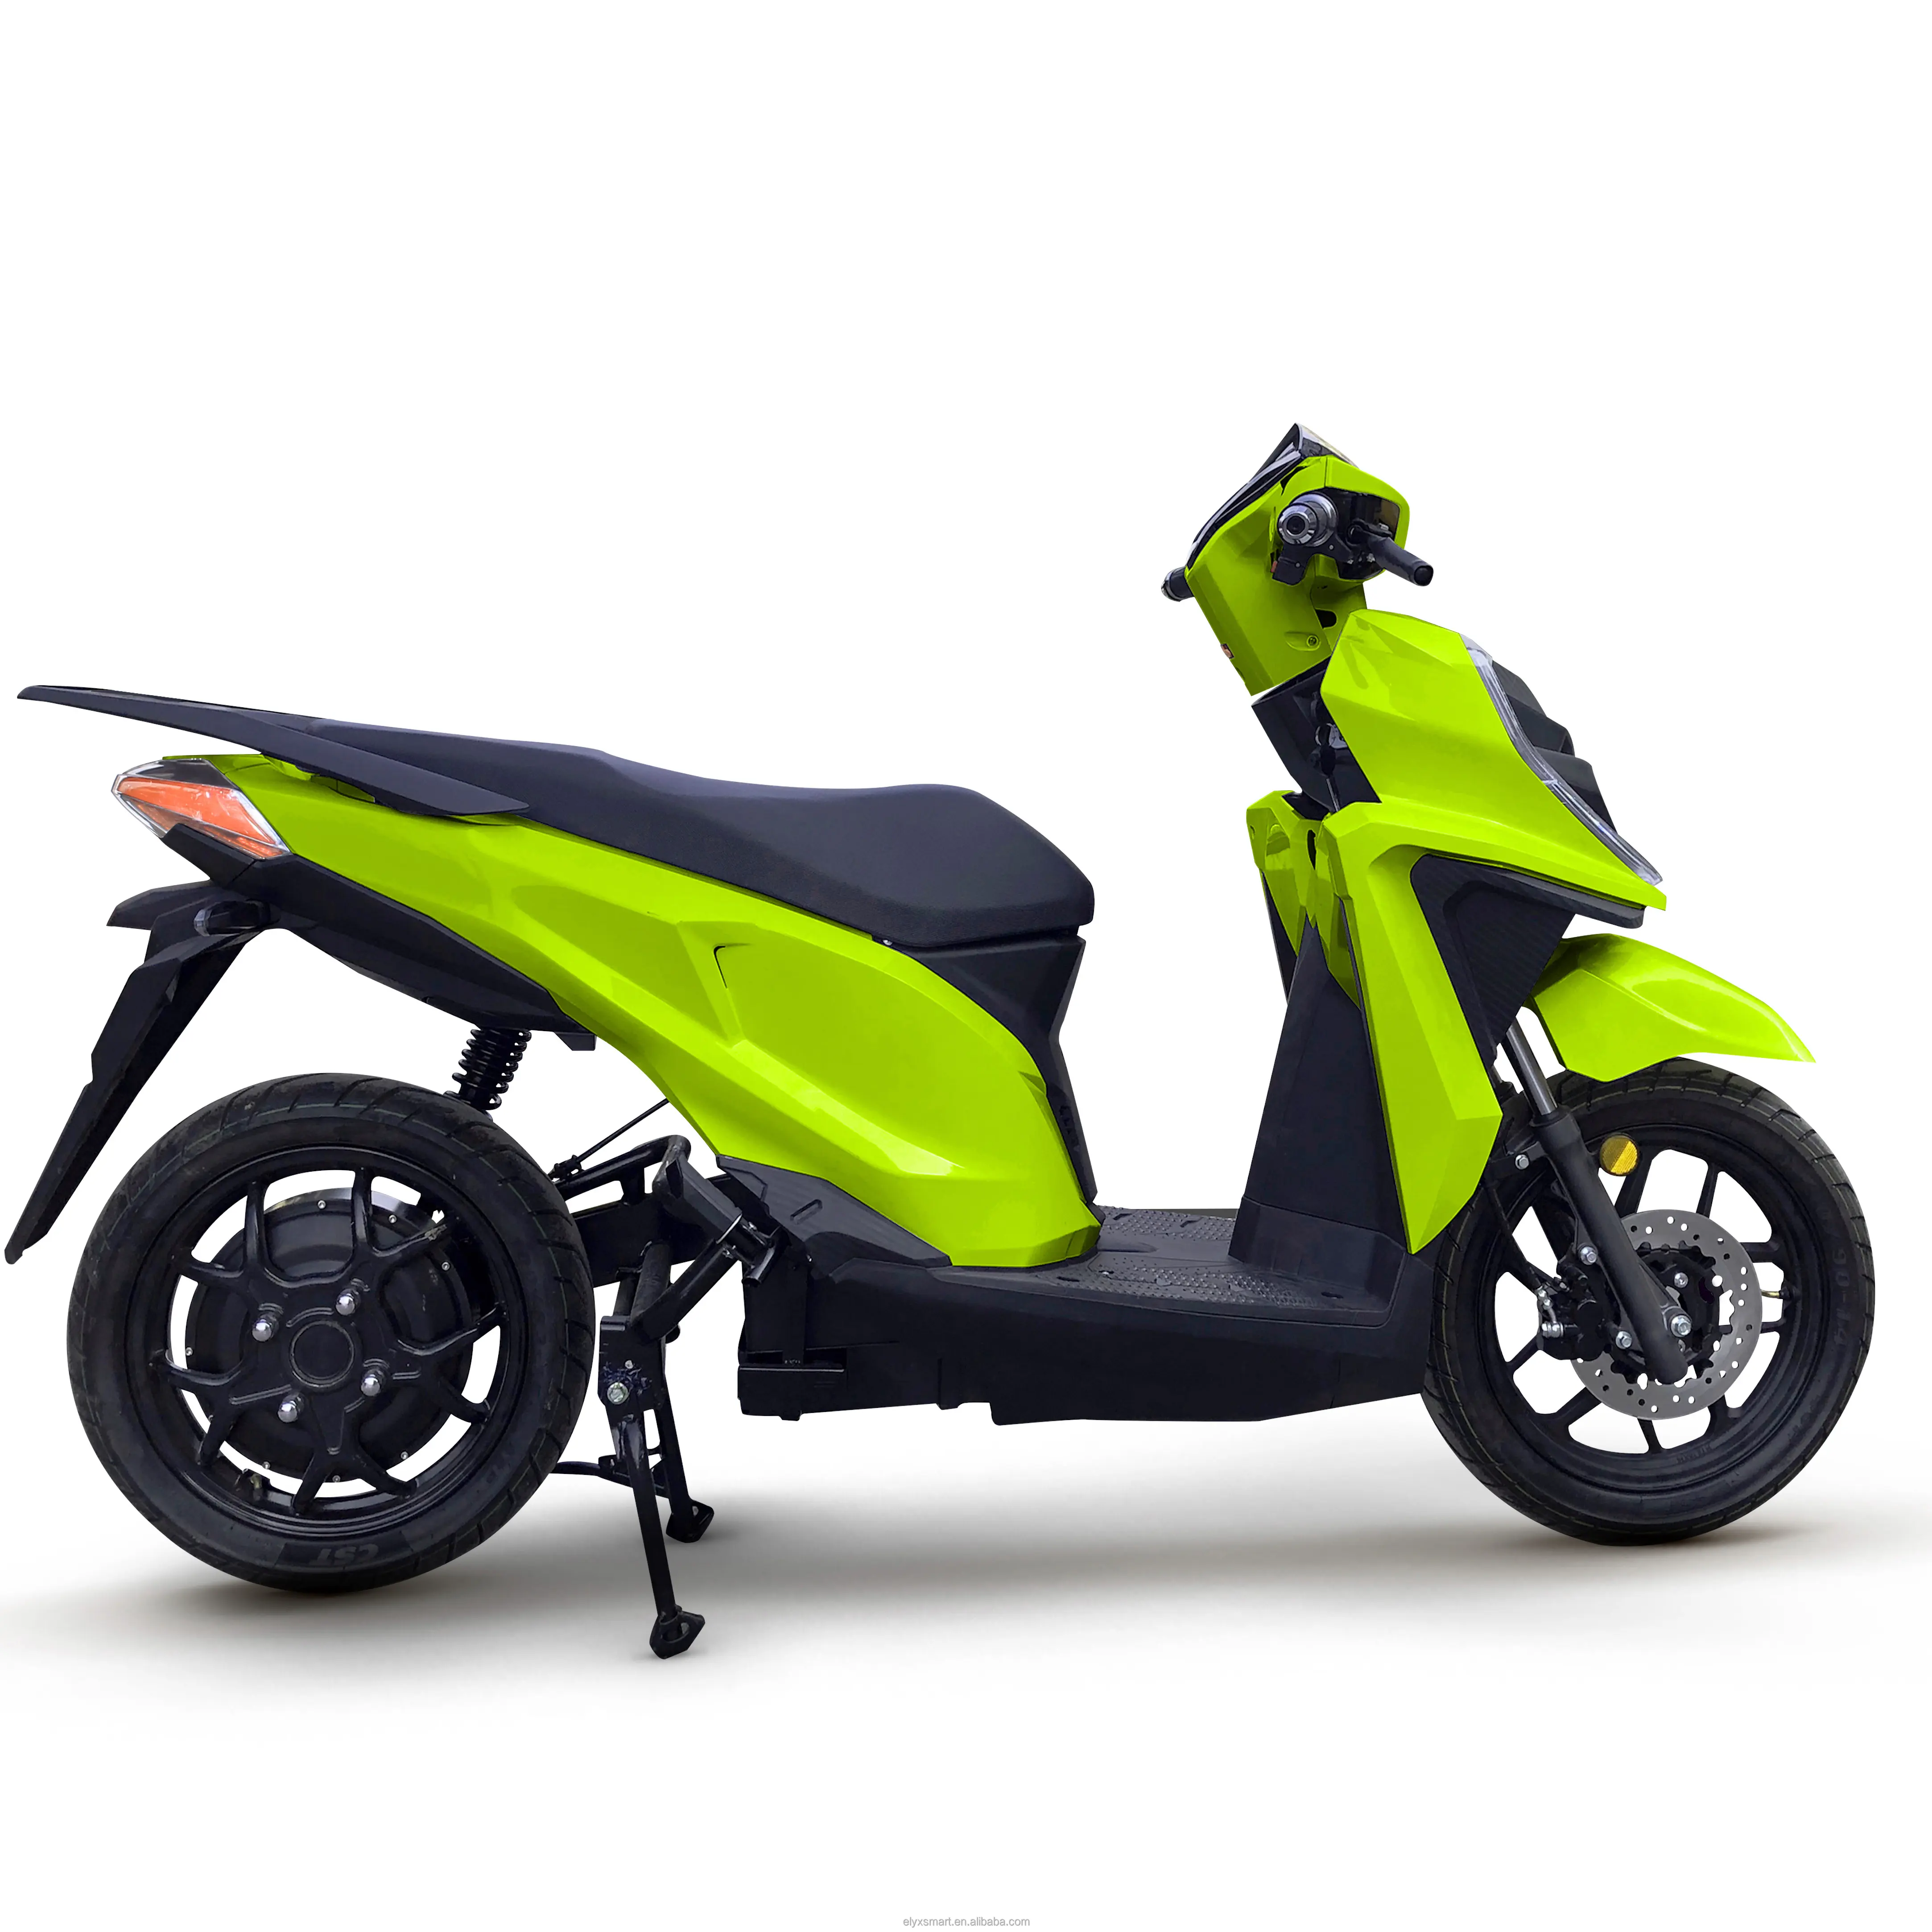 Nuovo Linc Pro 72 v38.4ah Design moderno City Road pendolarismo batteria al litio scooter elettrici per moto